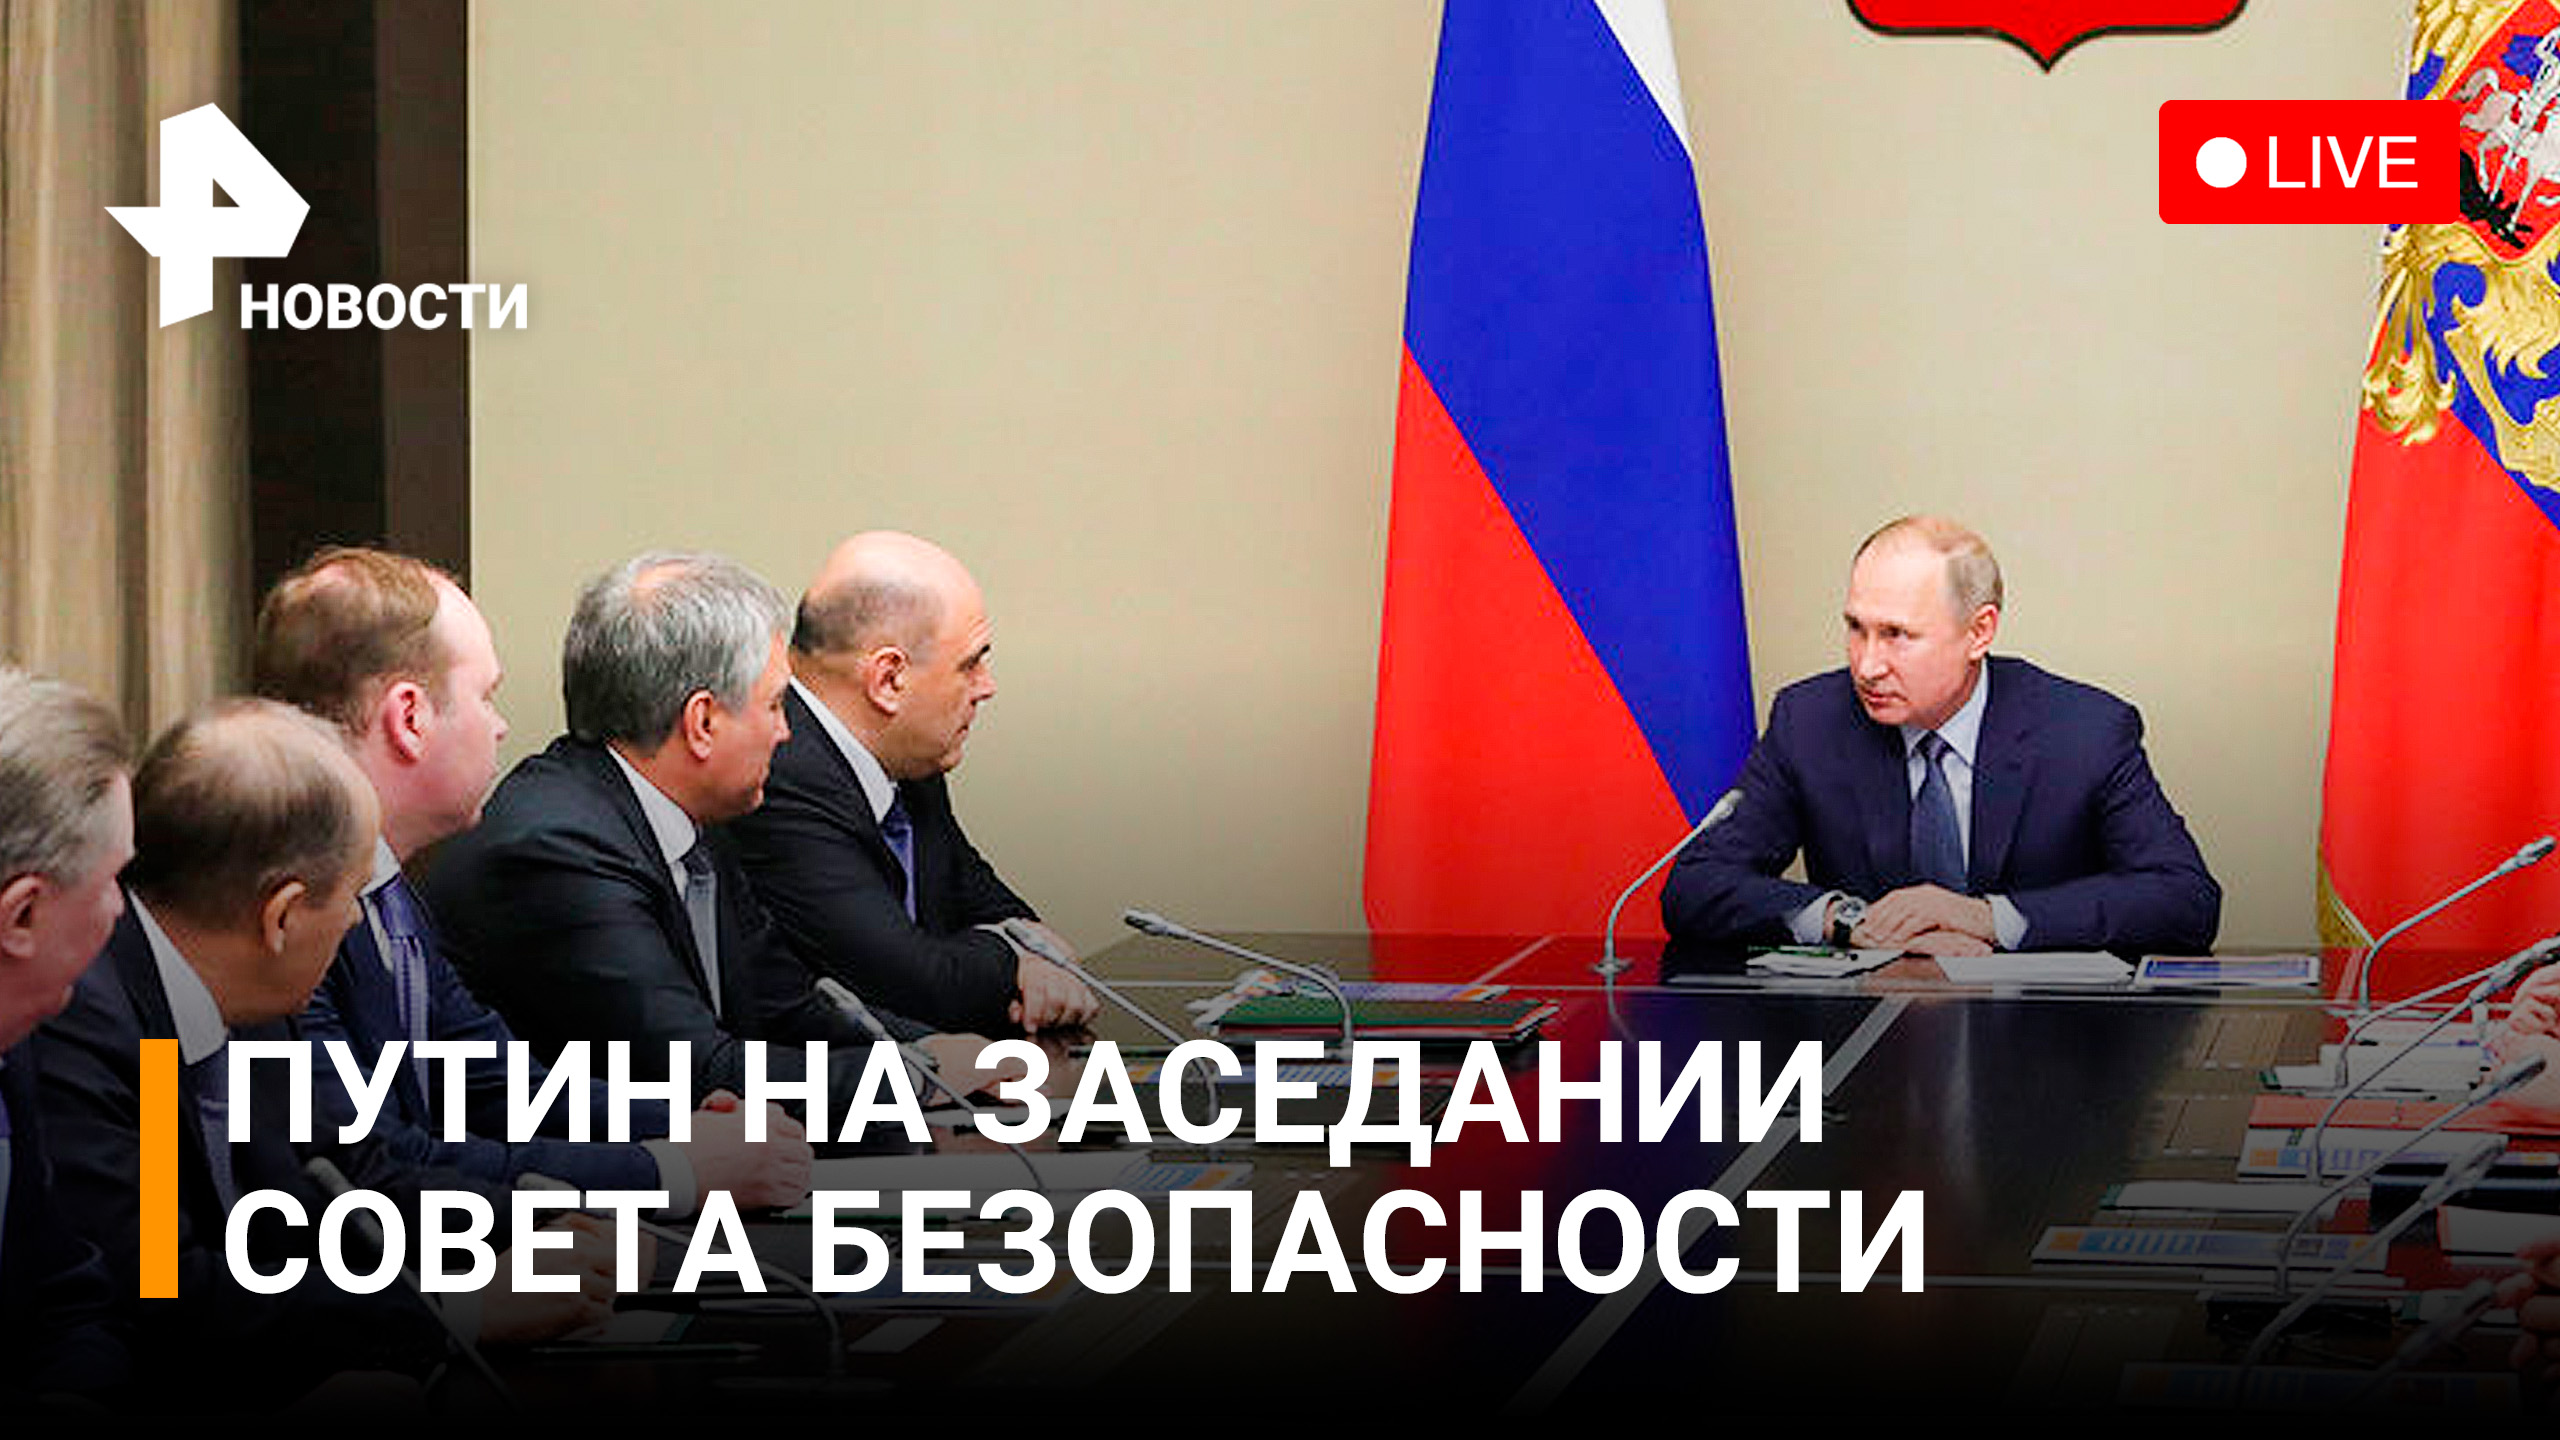 Прямой эфир рен пермь. Прямая трансляция Путина была. Пропагандисты Путина на телевидении.